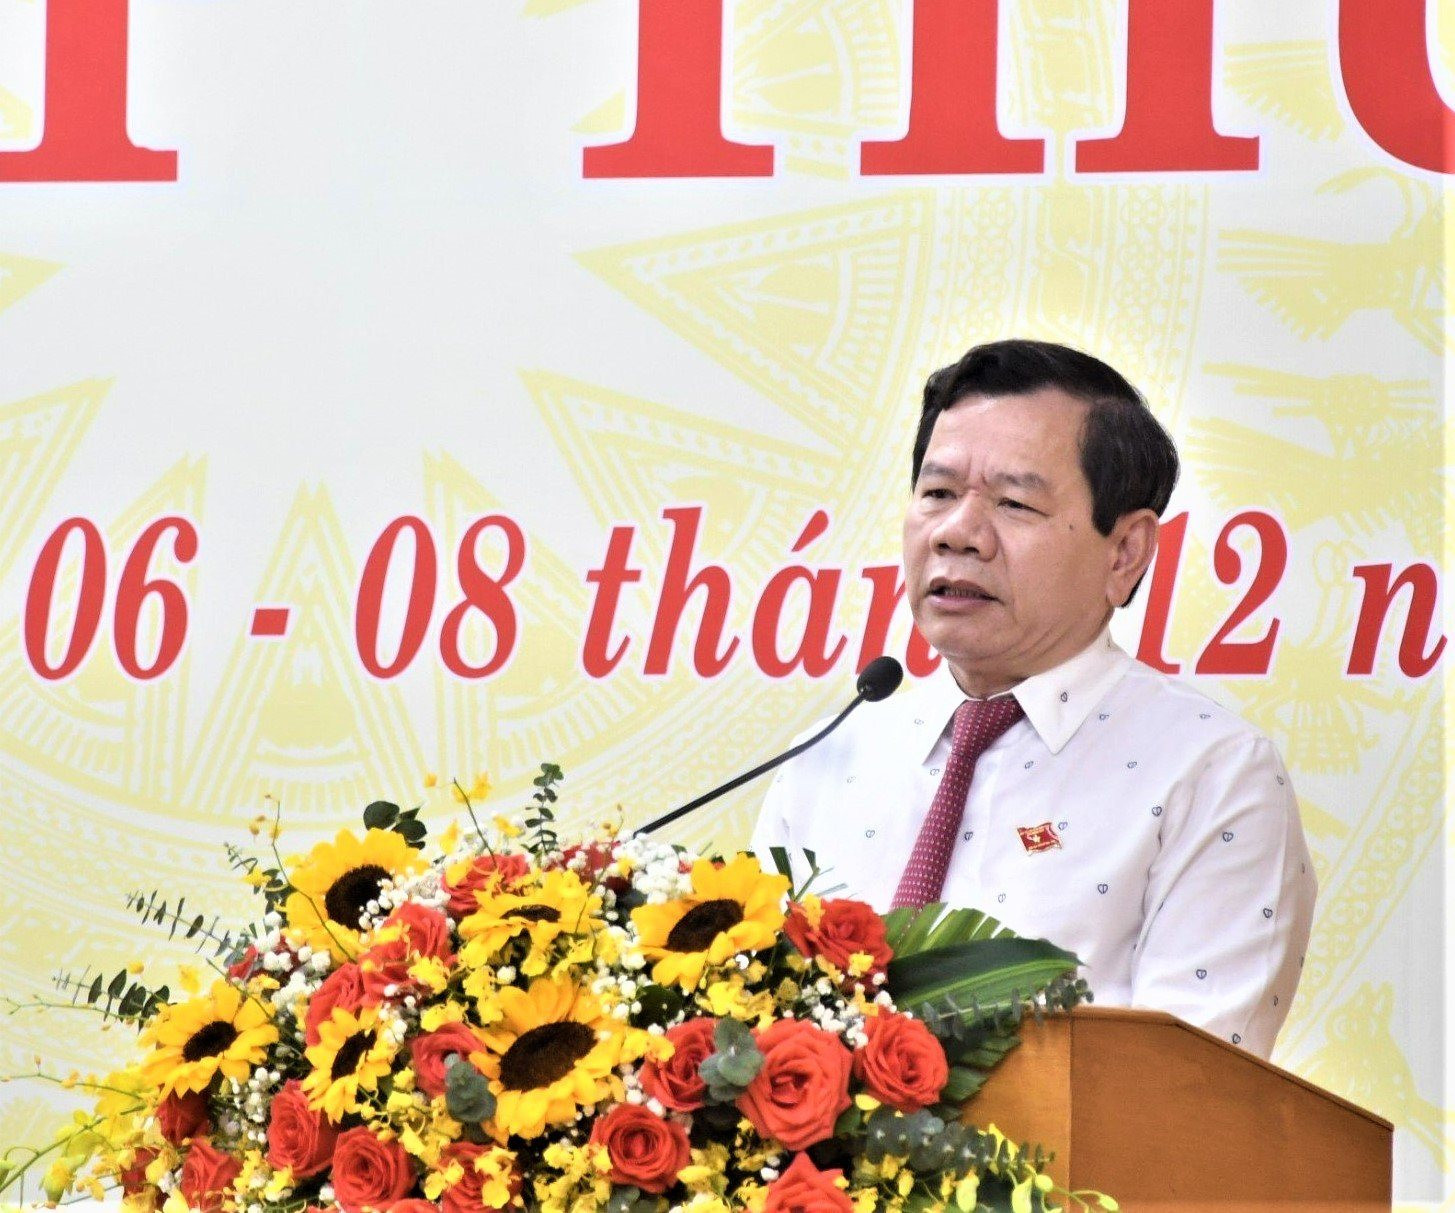 Ủy ban KTTƯ đề nghị kỷ luật bà Hoàng Thị Thúy Lan và ông Đặng Văn Minh